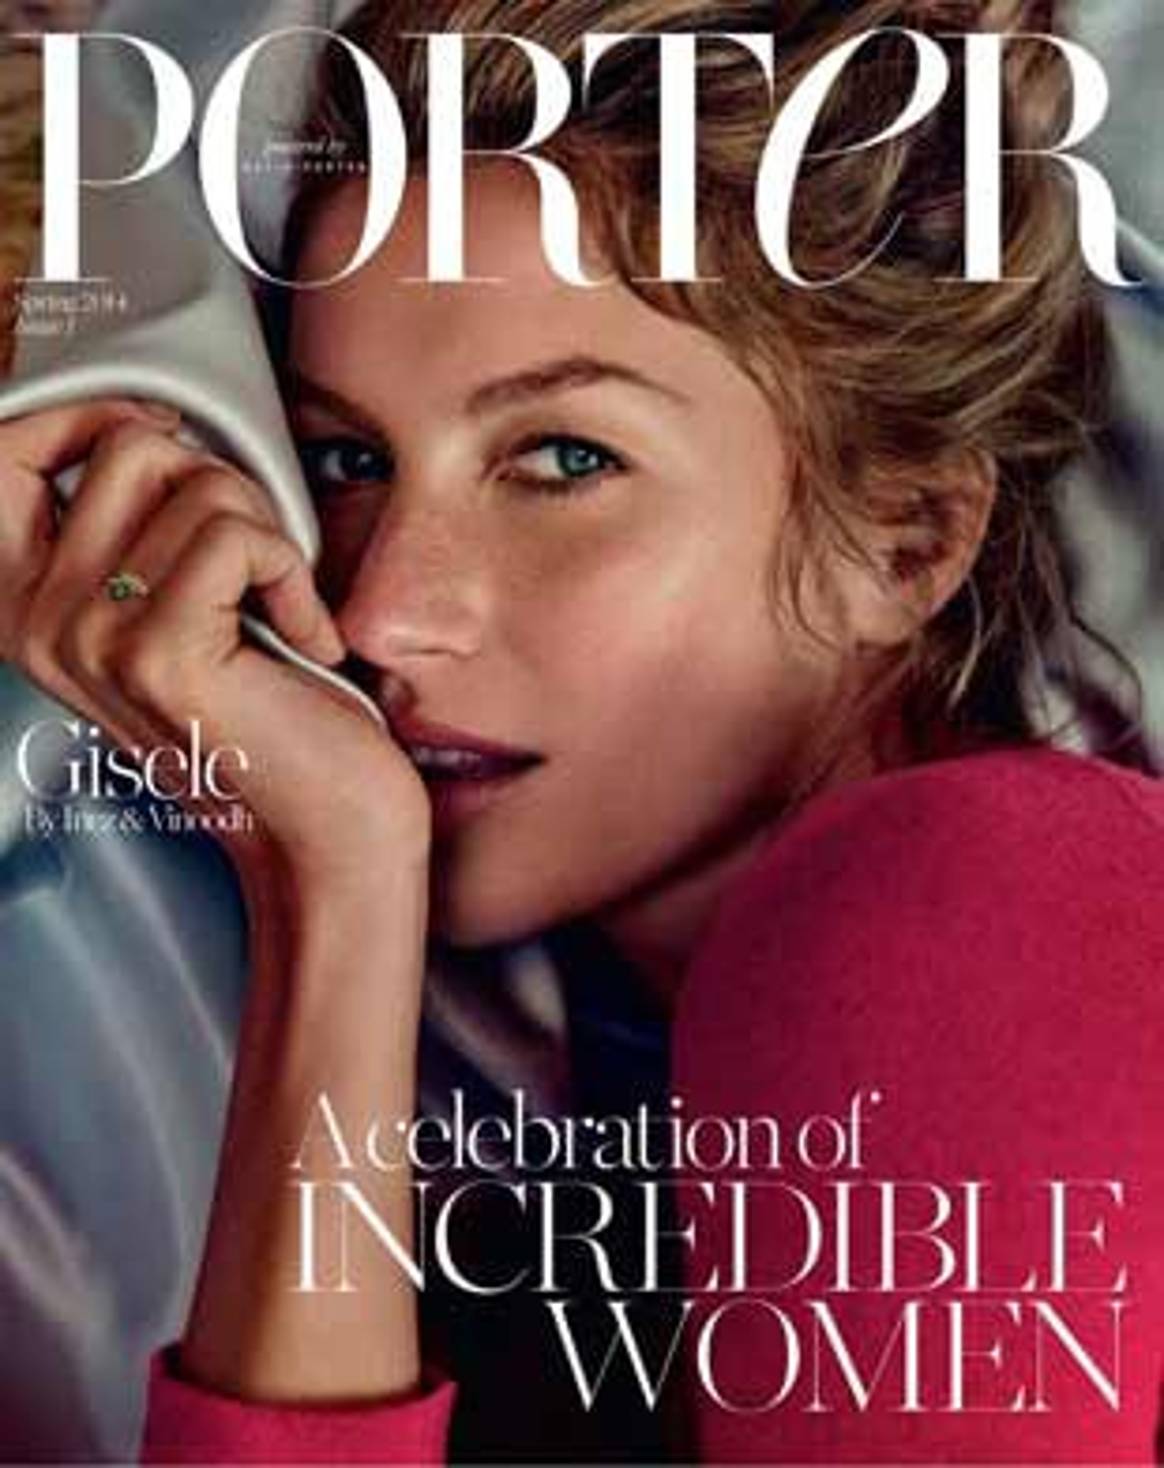 El portal Net-a-Porter lanza Porter, su revista impresa de moda